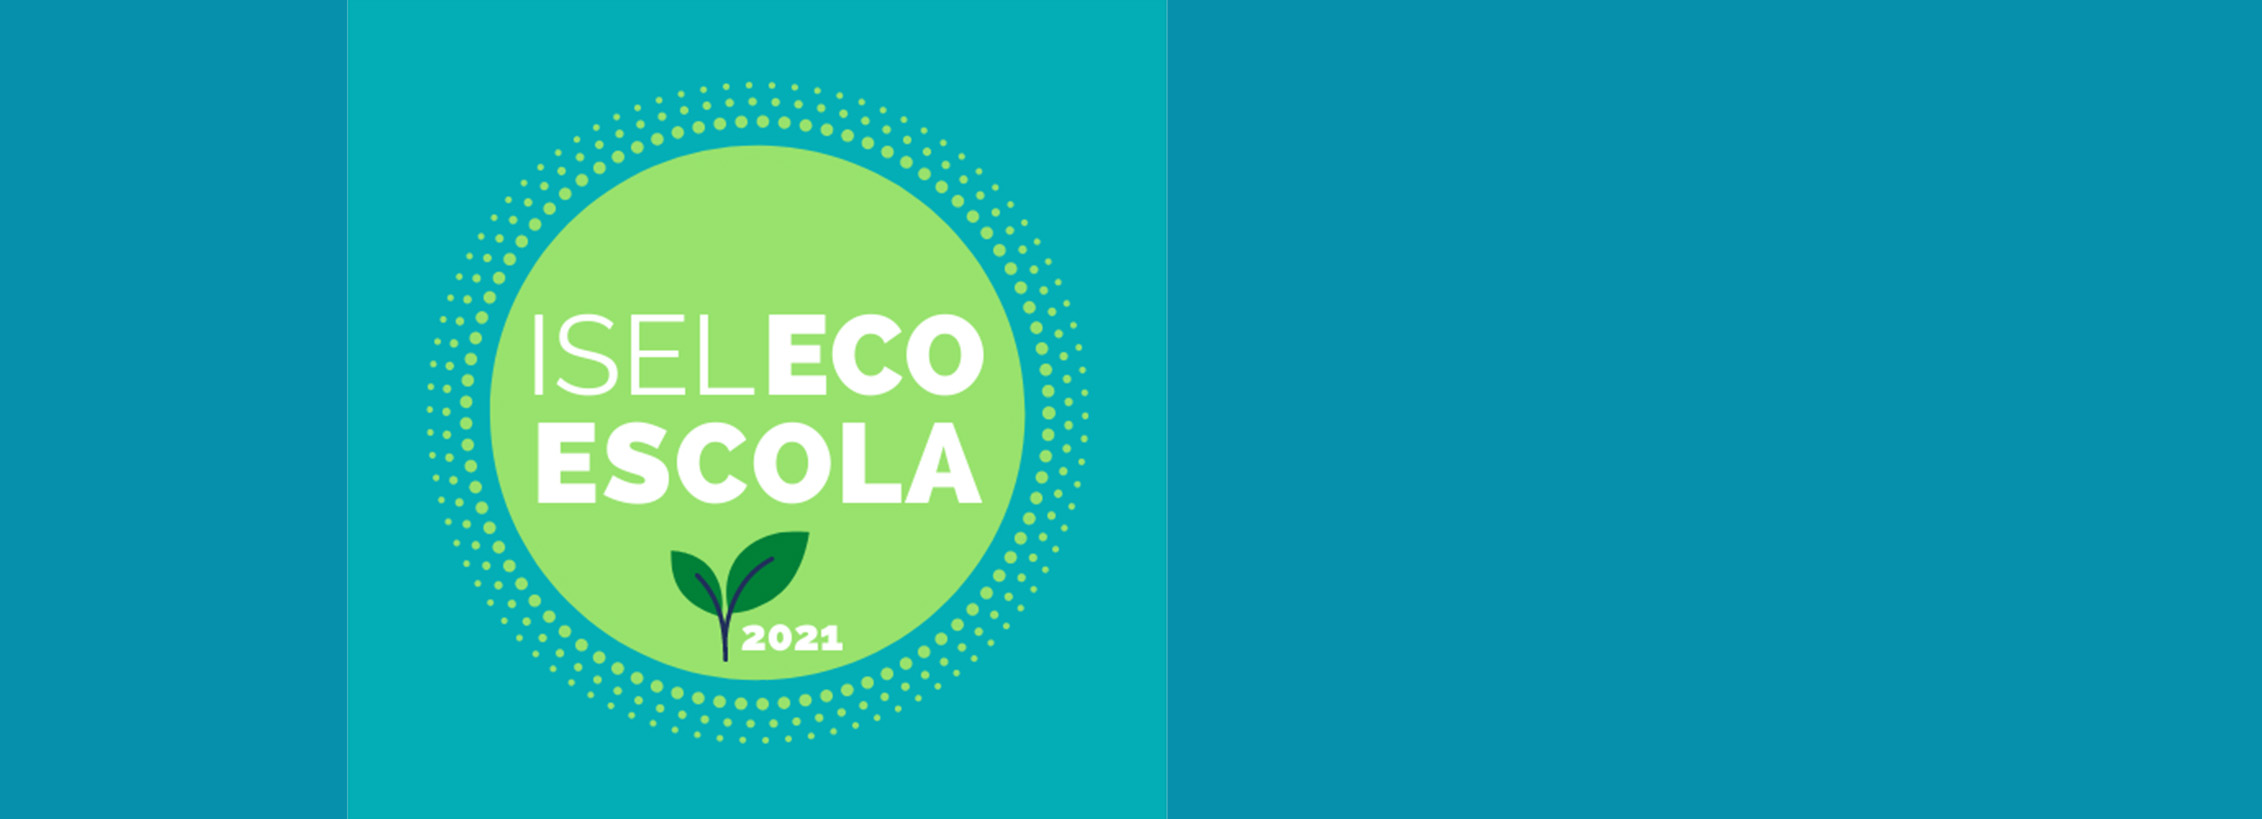 Eco-Escolas 2021